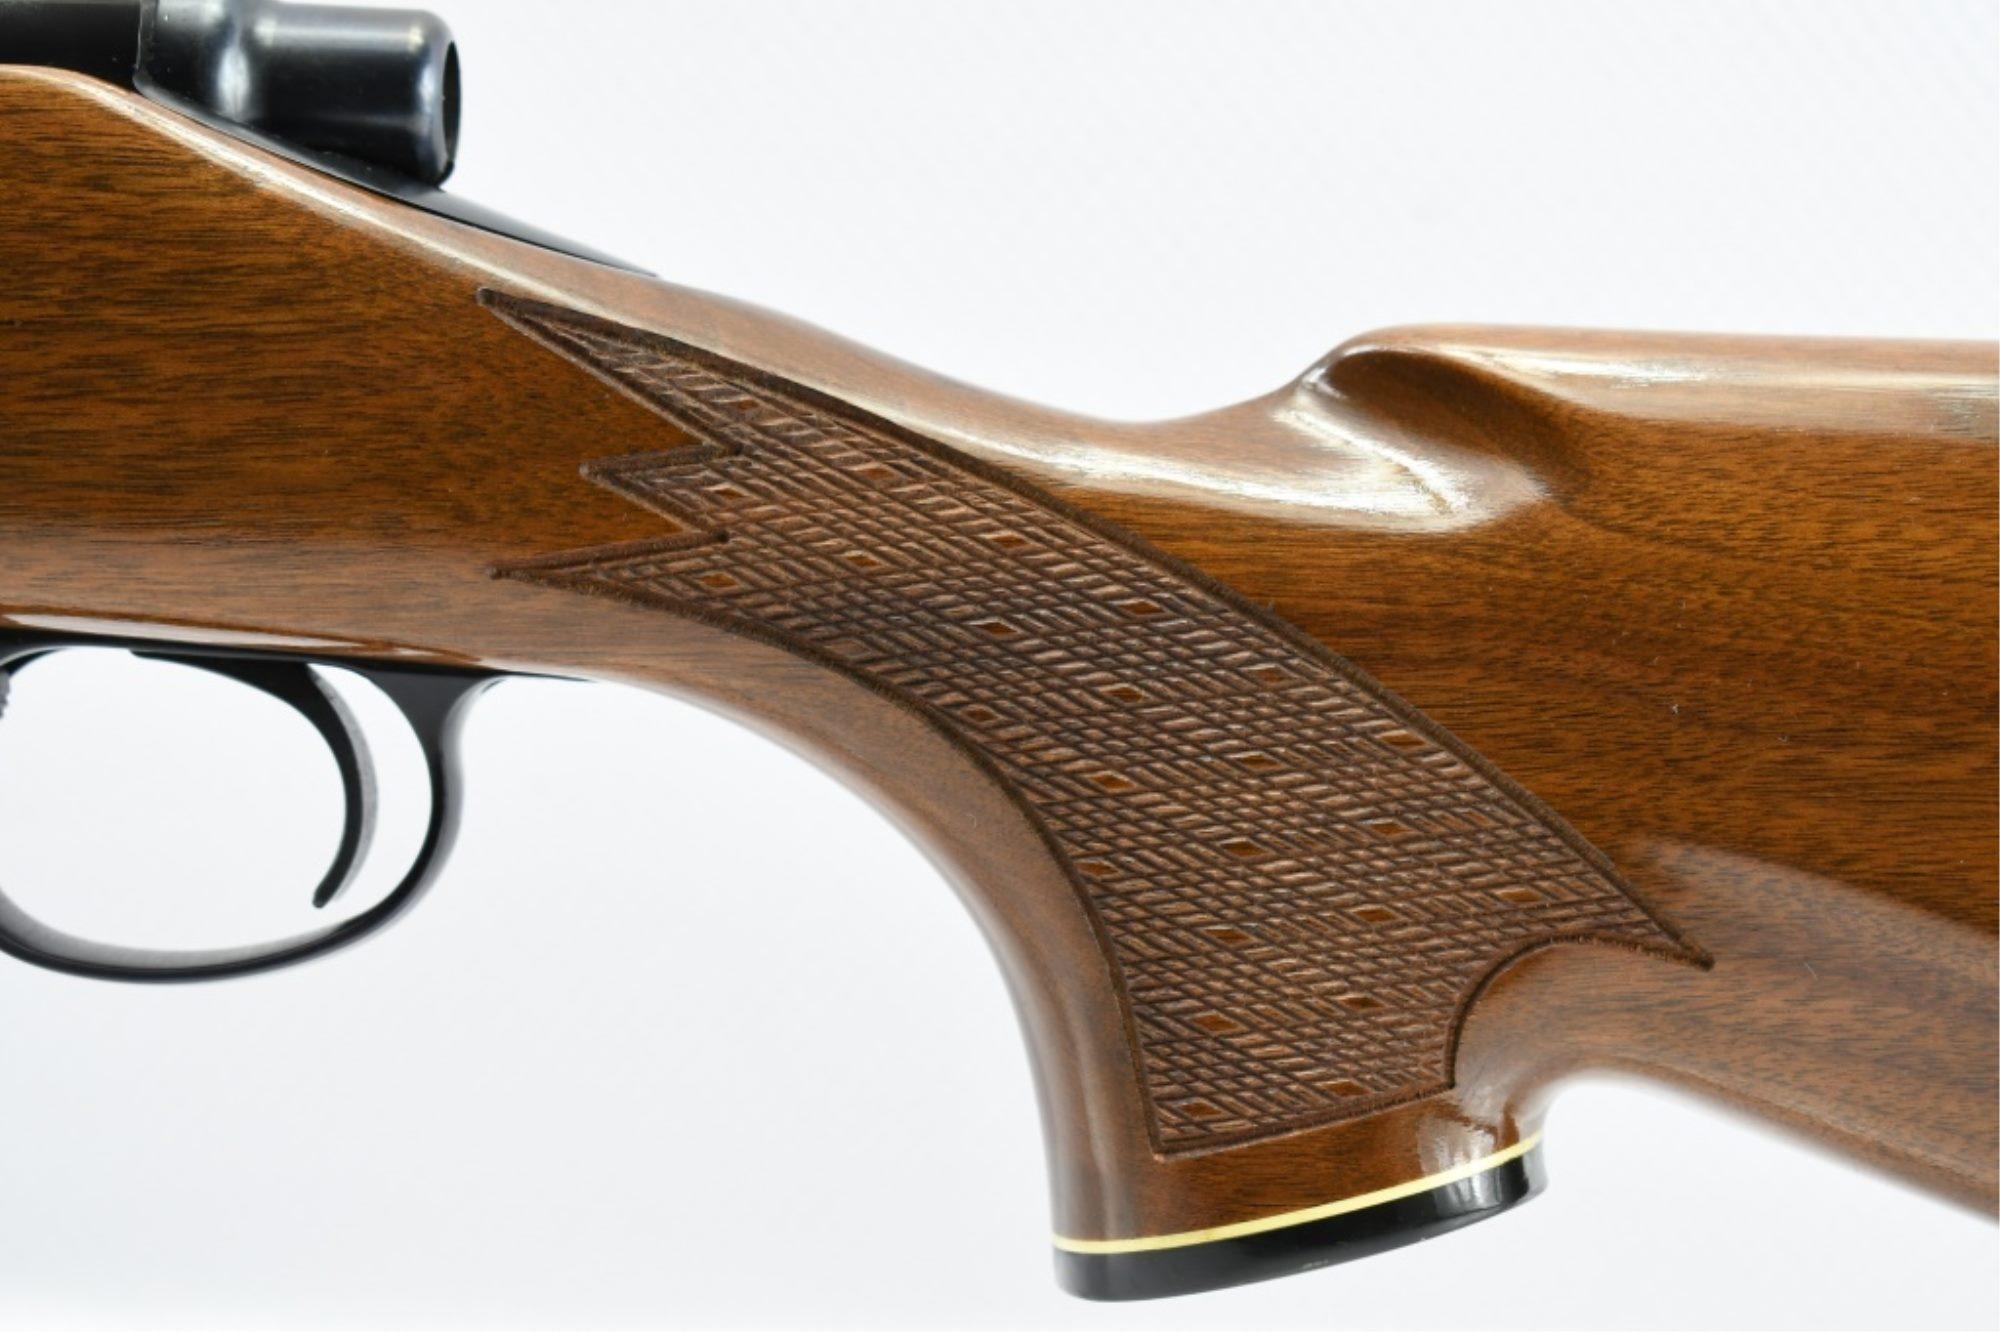 1963 Remington, Model 700 BDL, 6mm Rem. Cal., Bolt-Action, SN - C6494617